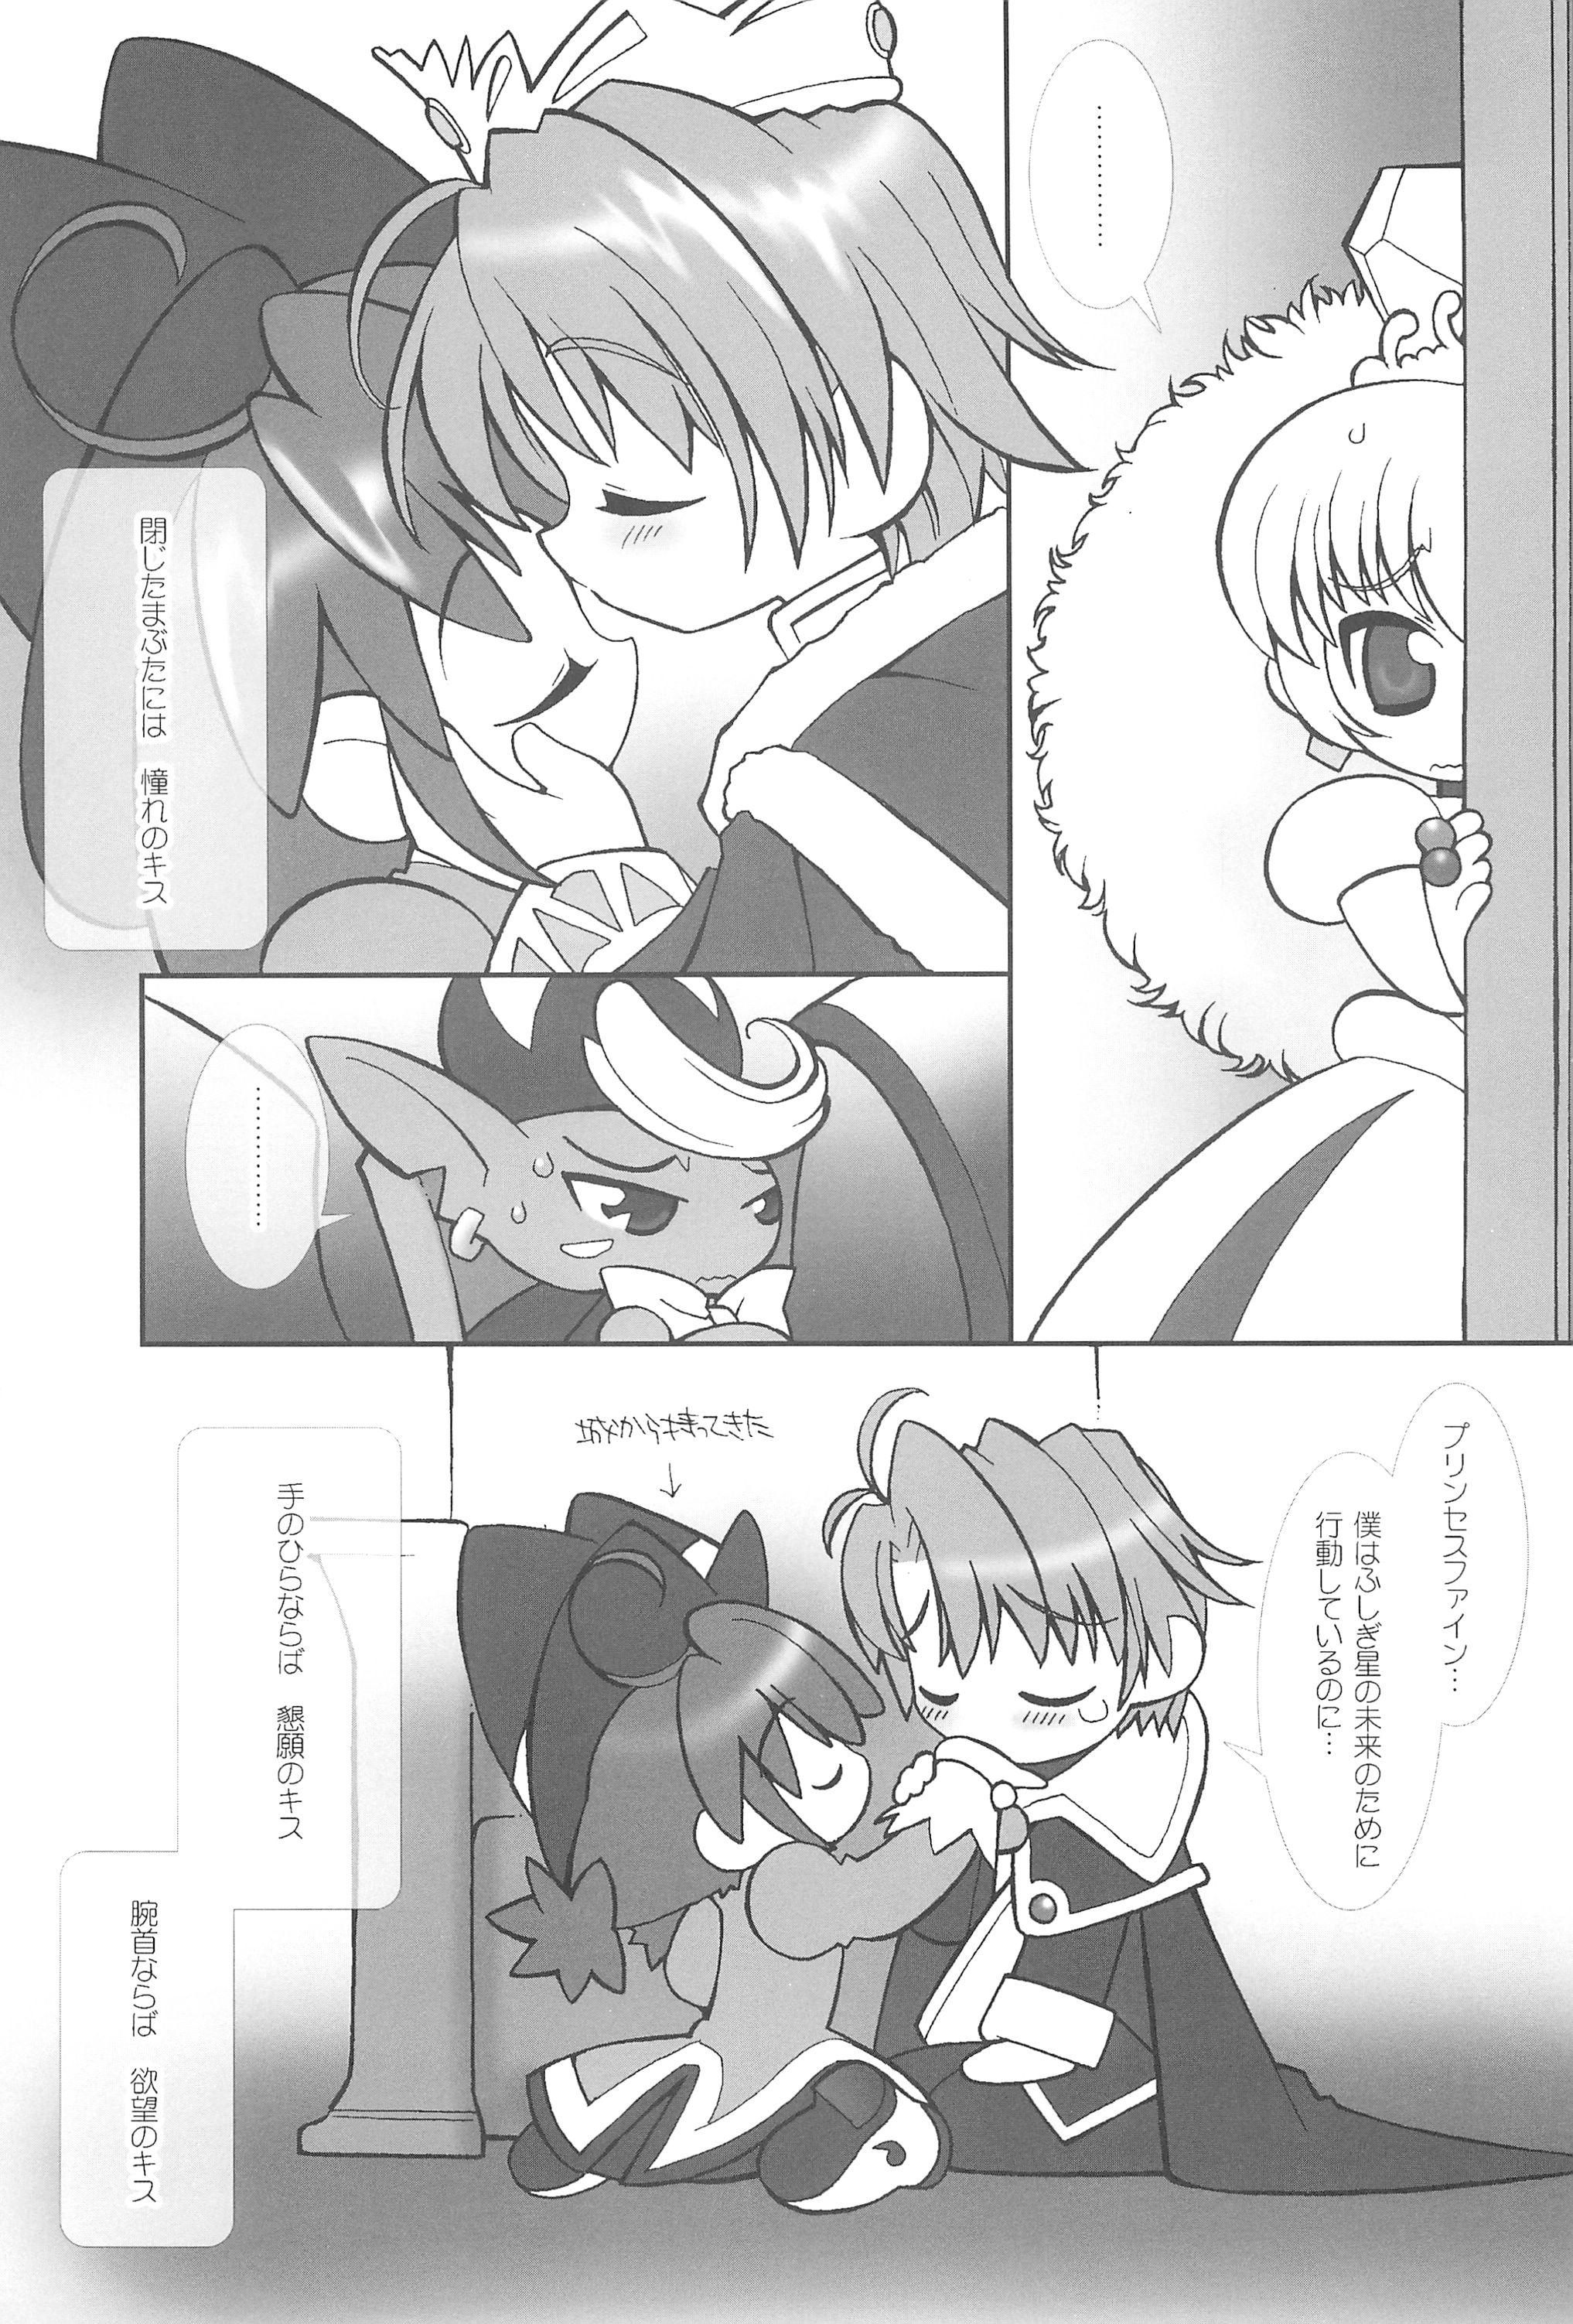 Thot Tsuki no Ura de Aimashou #6 - Let's go to the Darkside of the Moon #6 - Fushigiboshi no futagohime Pussysex - Page 7